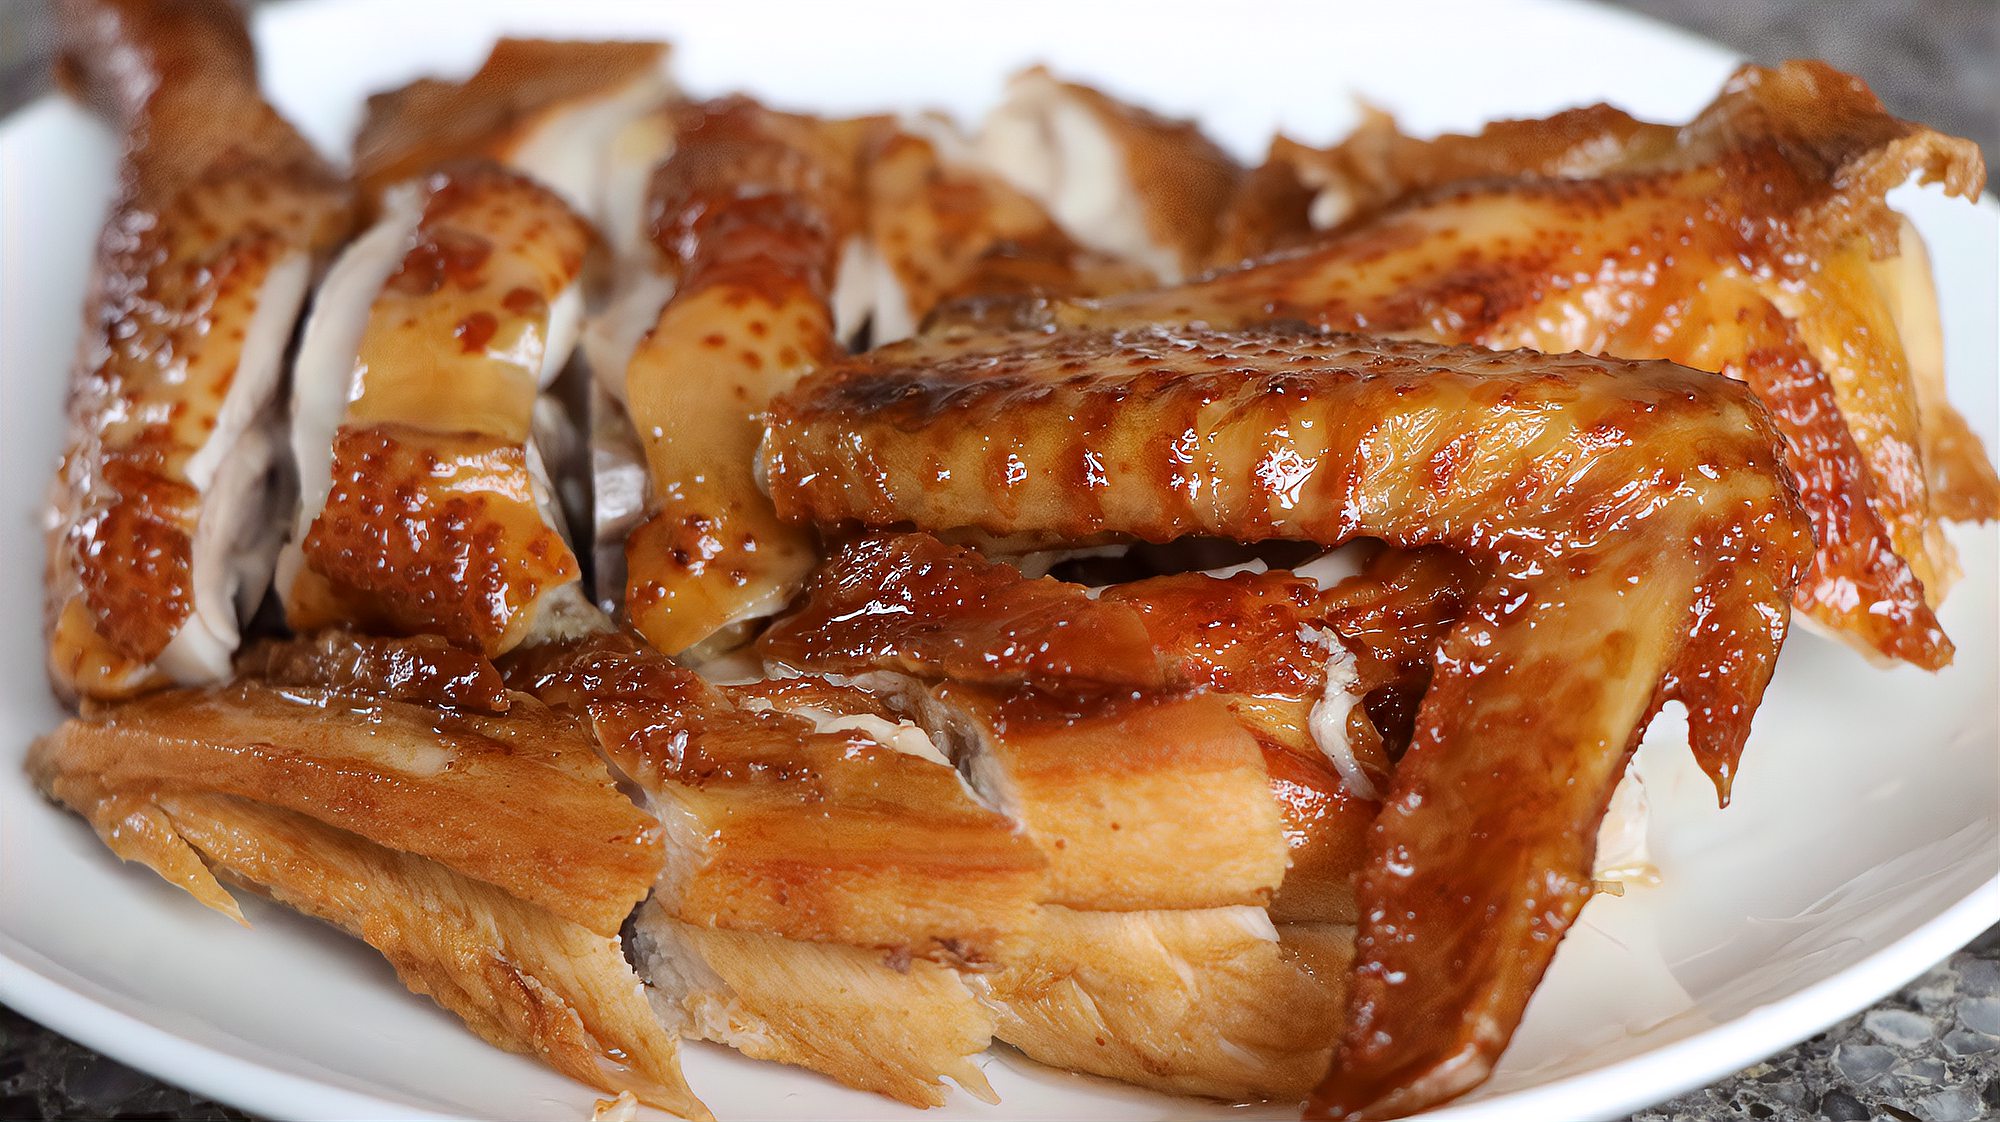 推荐六道家常菜的做法,葱油焗鸡肉质嫩滑,锅包肉酸爽开胃